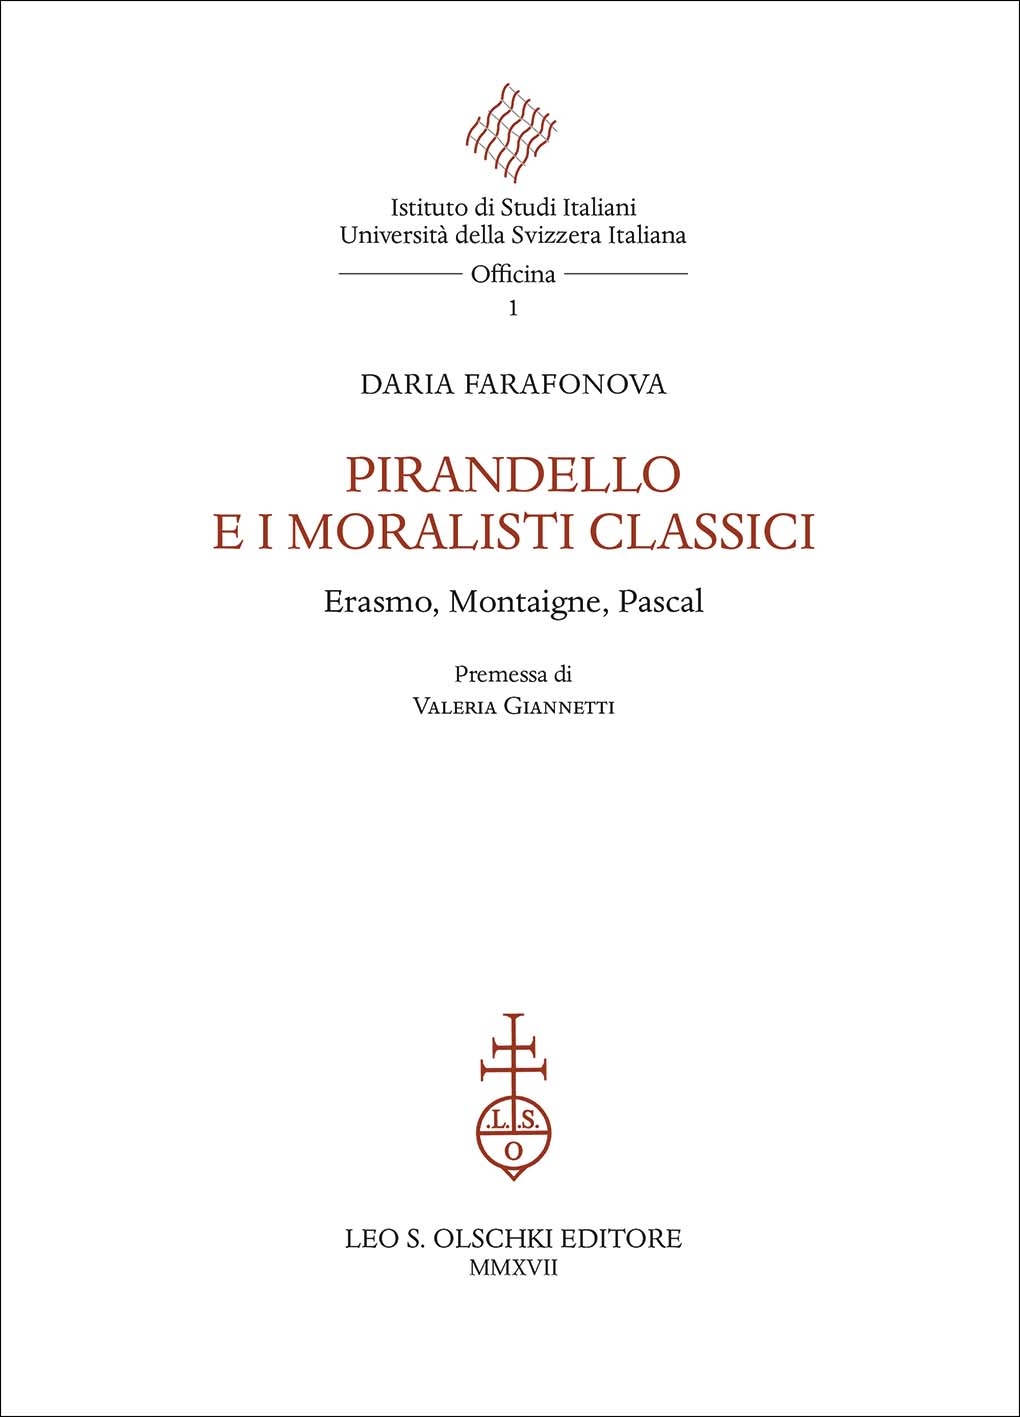 Pirandello e i moralisti classici